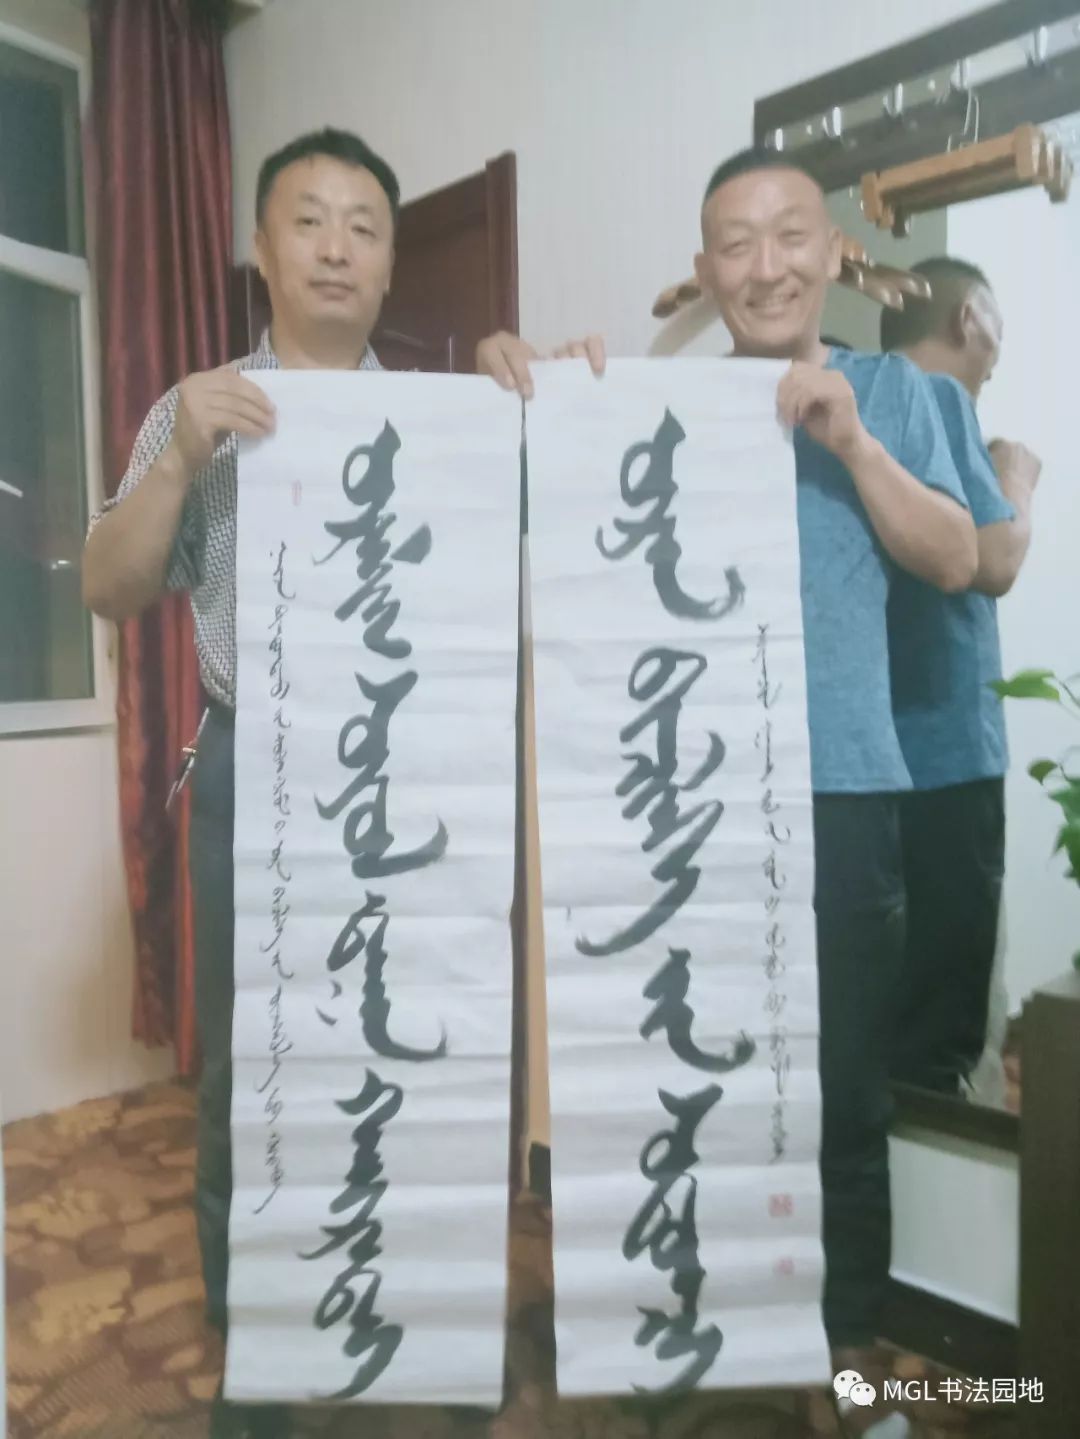 宝音陶格陶“乌珠穆沁”主题蒙古文书法展在西乌旗举办 第22张